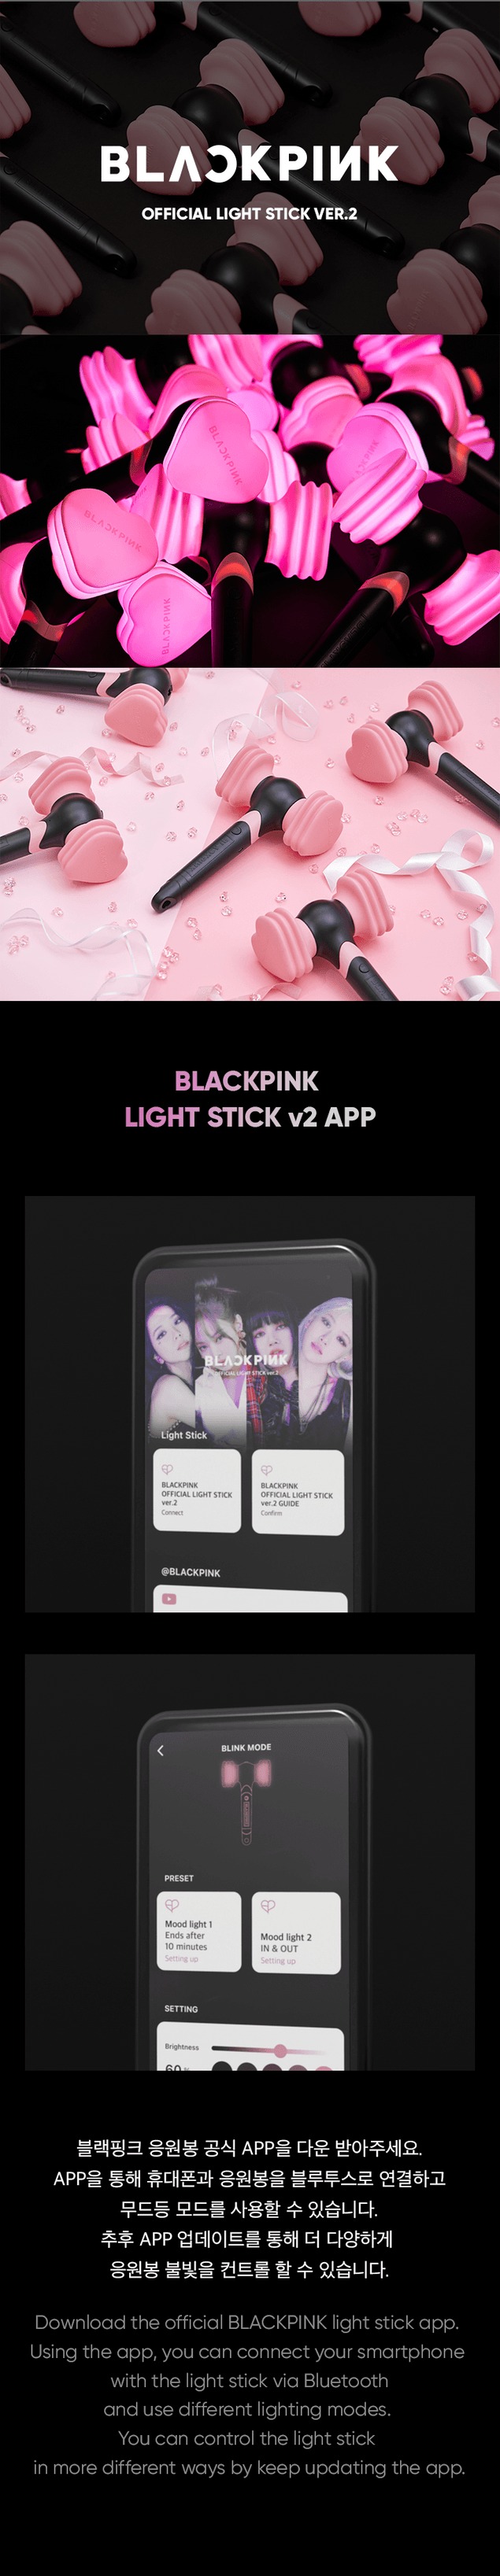 ブラックピンク (BLACKPINK) 公式 ペンライト Ver.2 Official Light